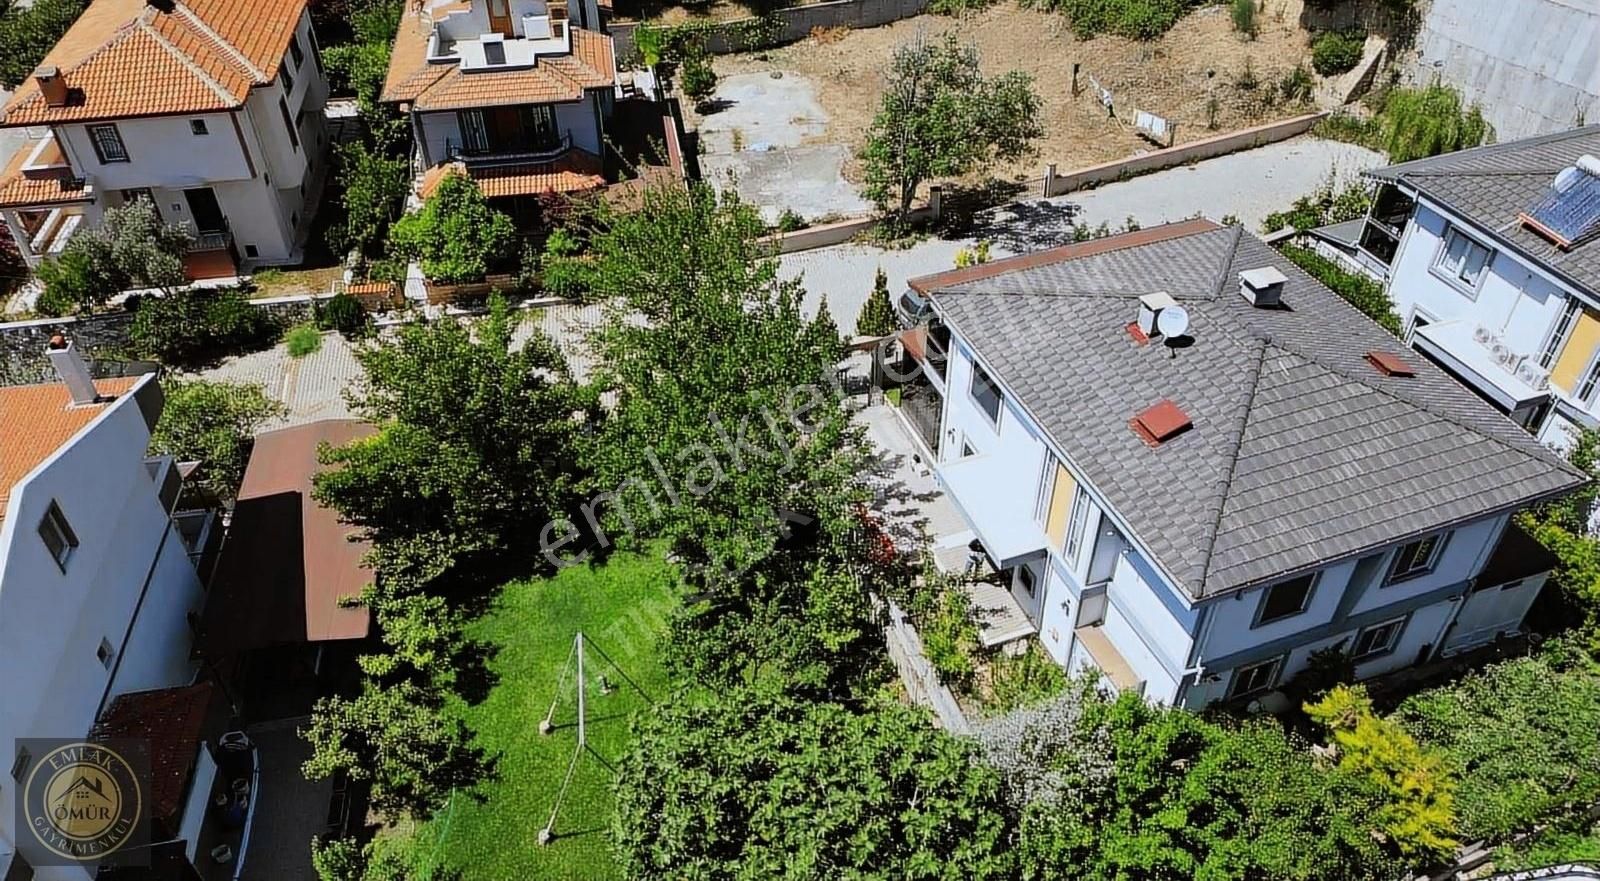 Edremit İskele Satılık Villa ÖMÜR EMLAK'TAN ÖZDEMİRDE DENİZE 300 METRE MÜSTAKİL BAHEÇLİ VİLLA